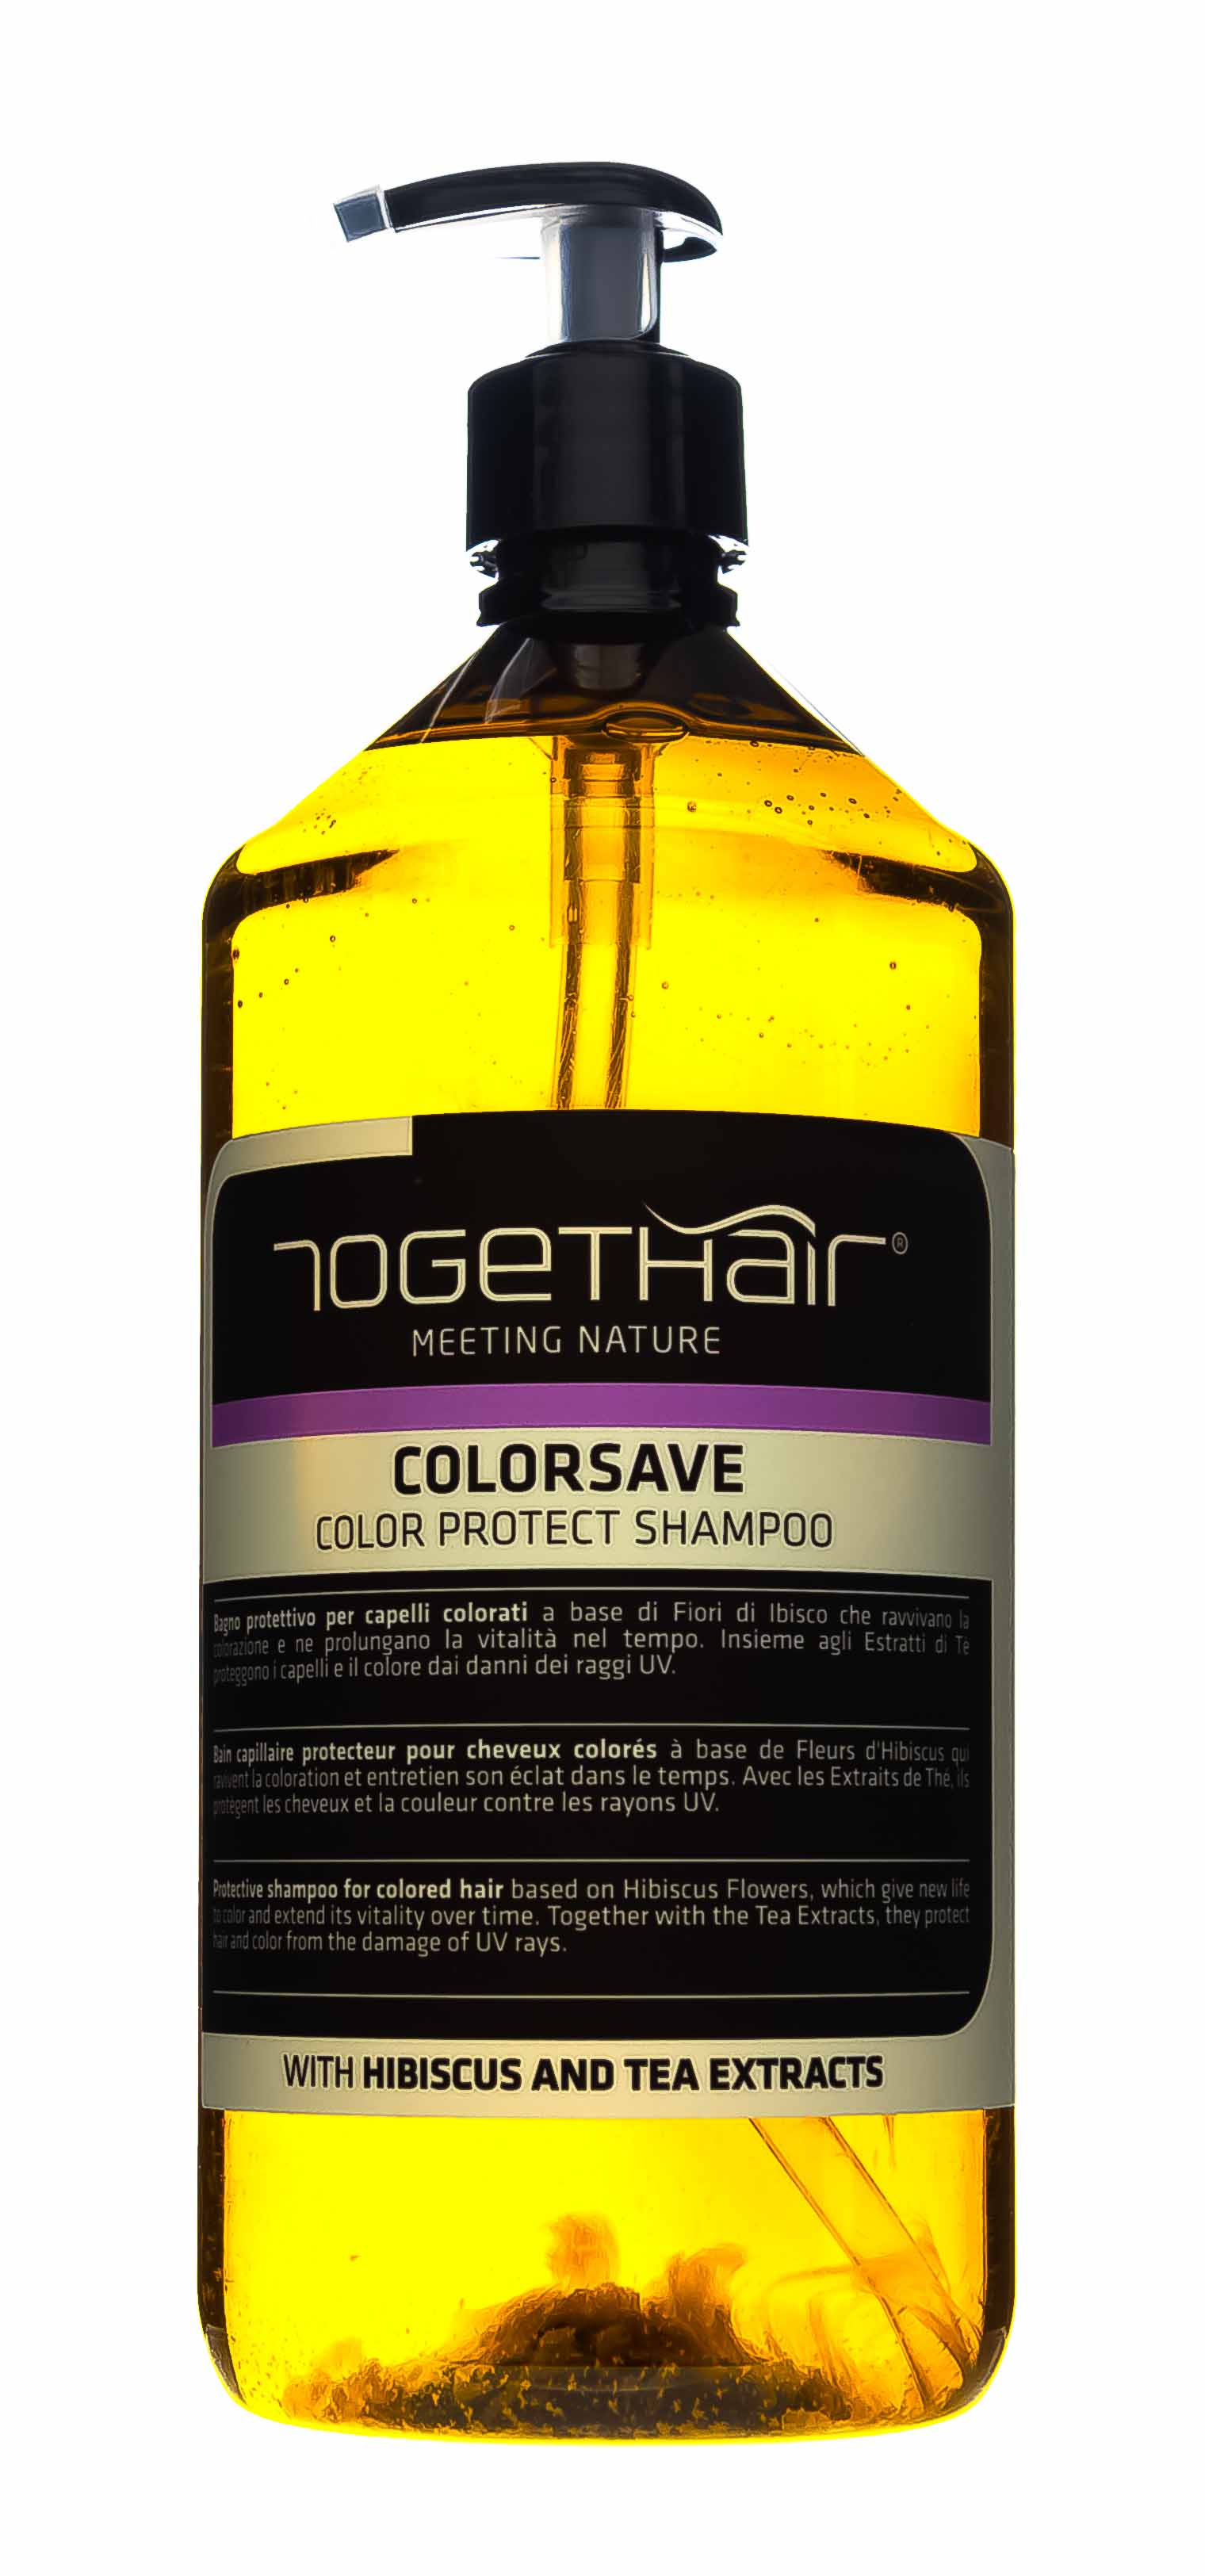 Togethair Шампунь для защиты цвета окрашенных волос, 1000 мл (Togethair, Colorsave) togethair двухфазный спрей для защиты цвета окрашенных волос colorsave bi phase spray 200 мл спрей